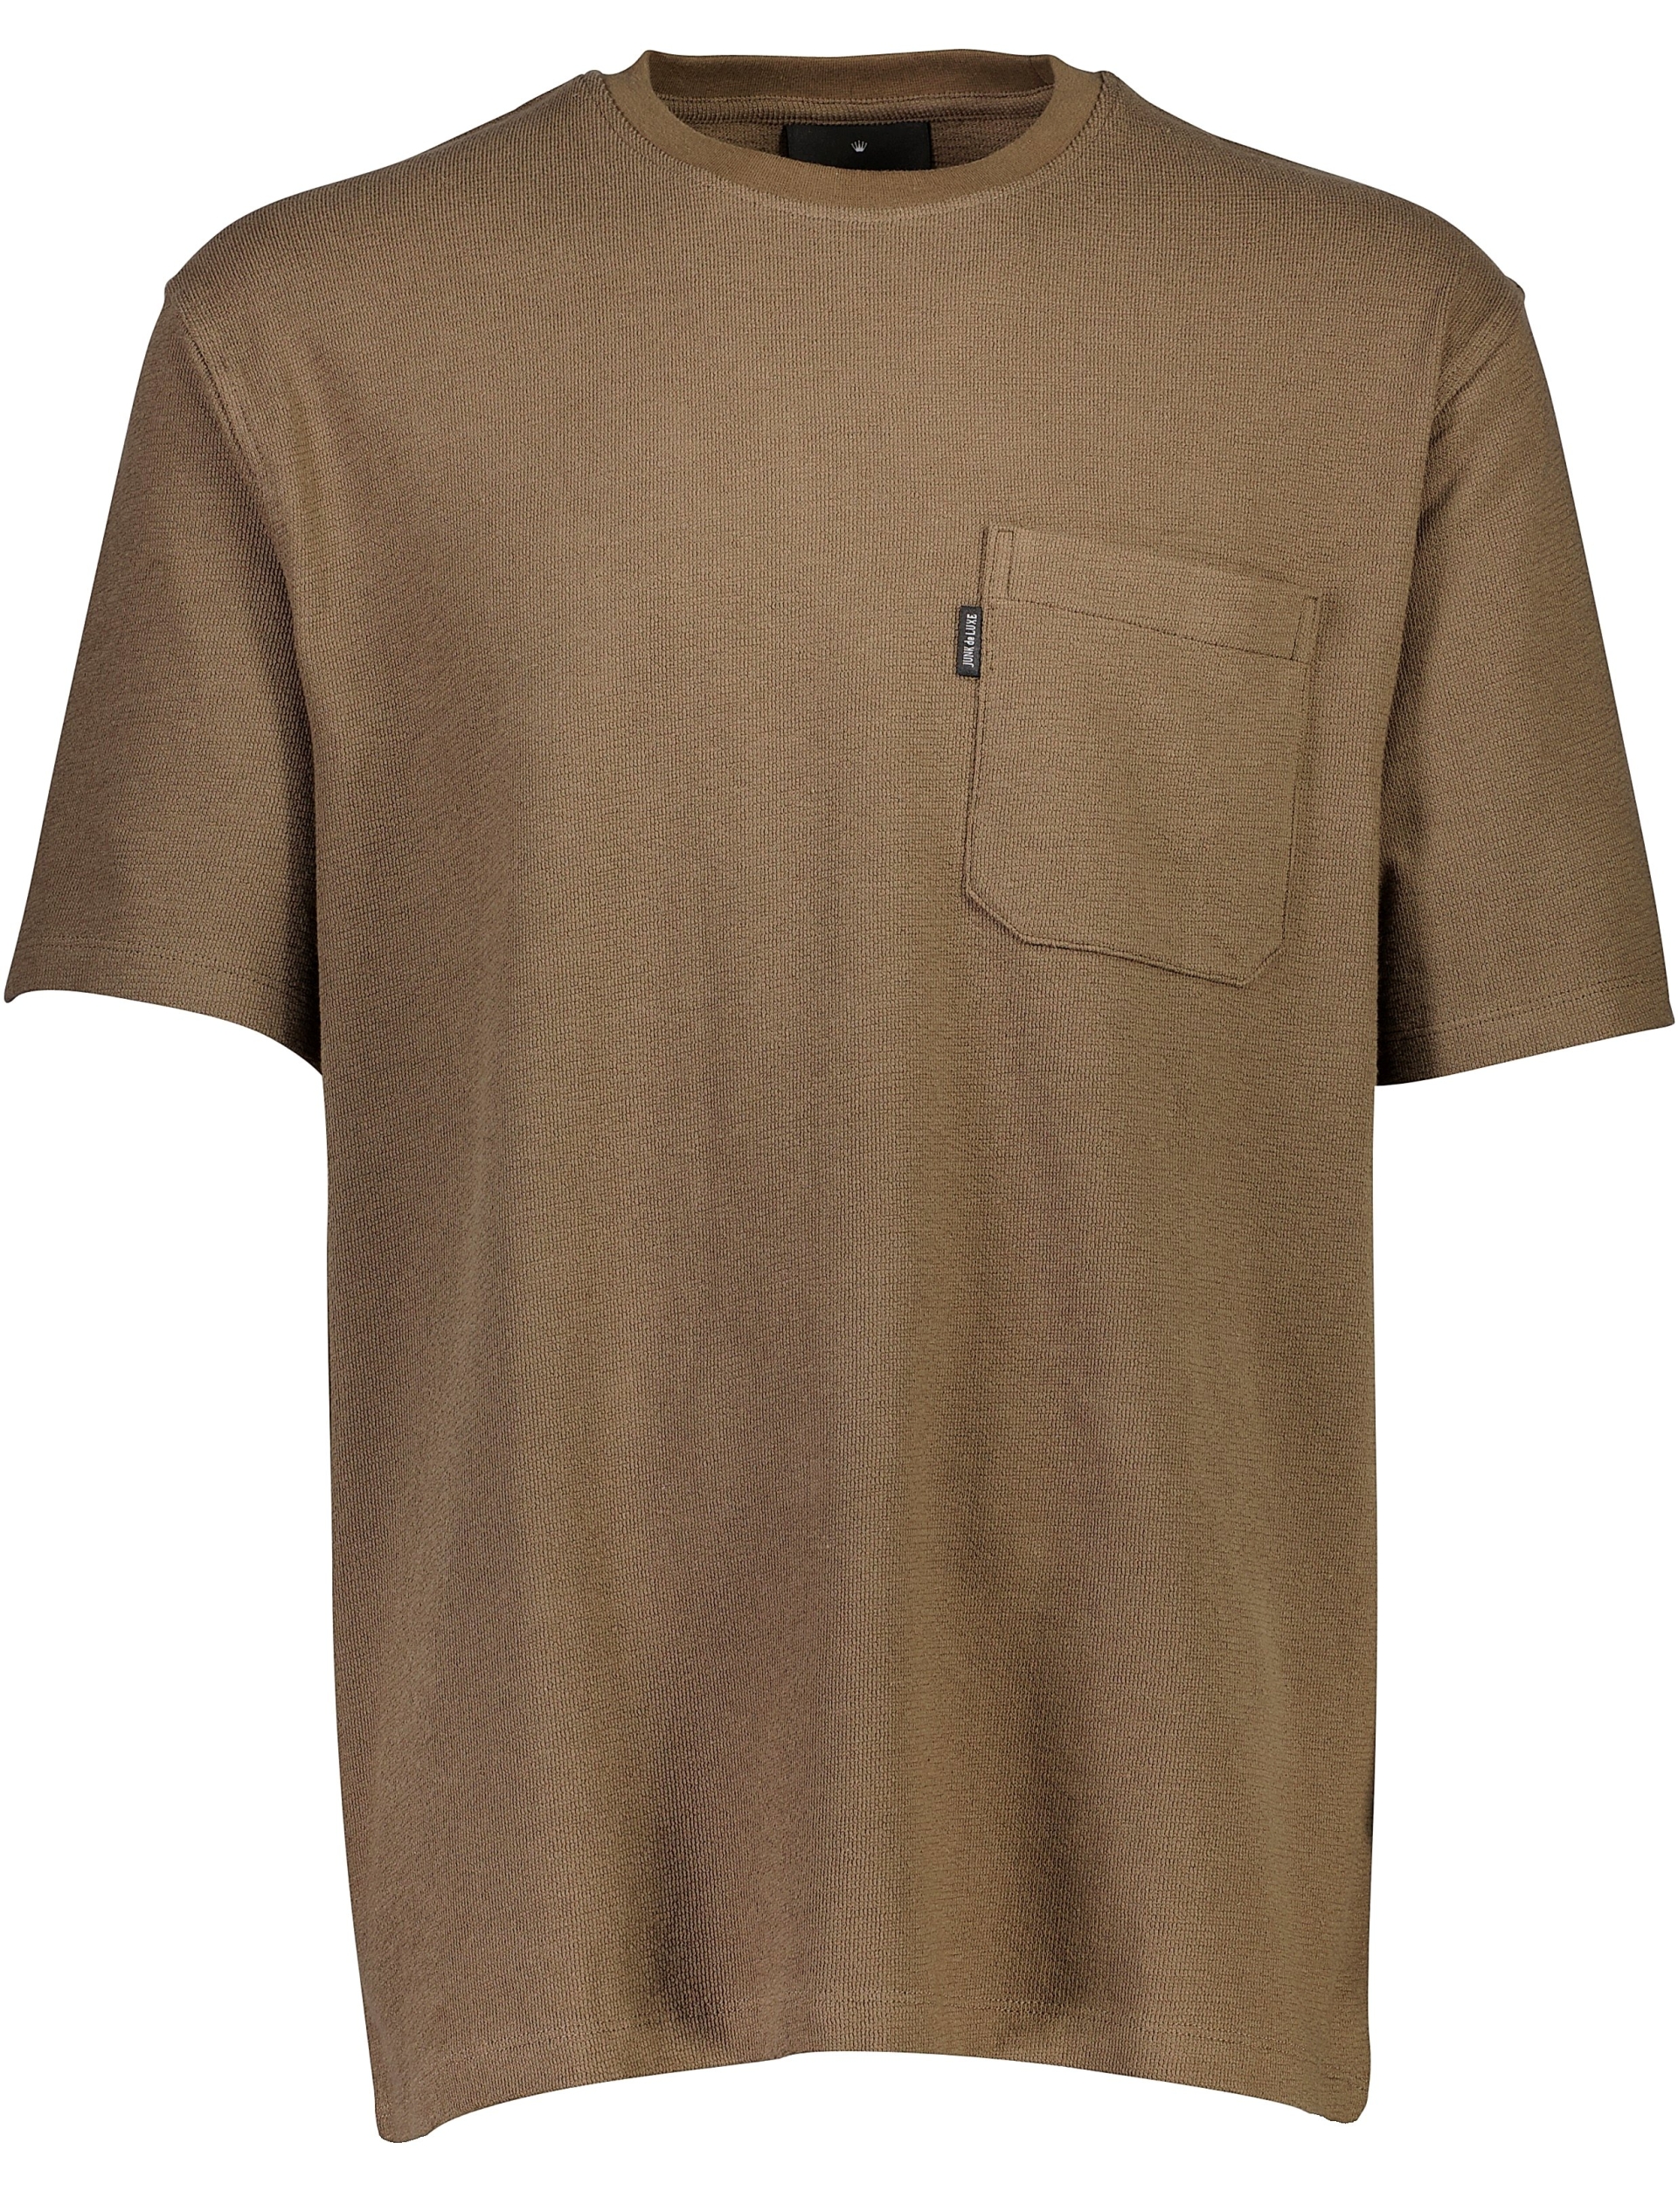 Junk de Luxe T-shirt brun / mid brown